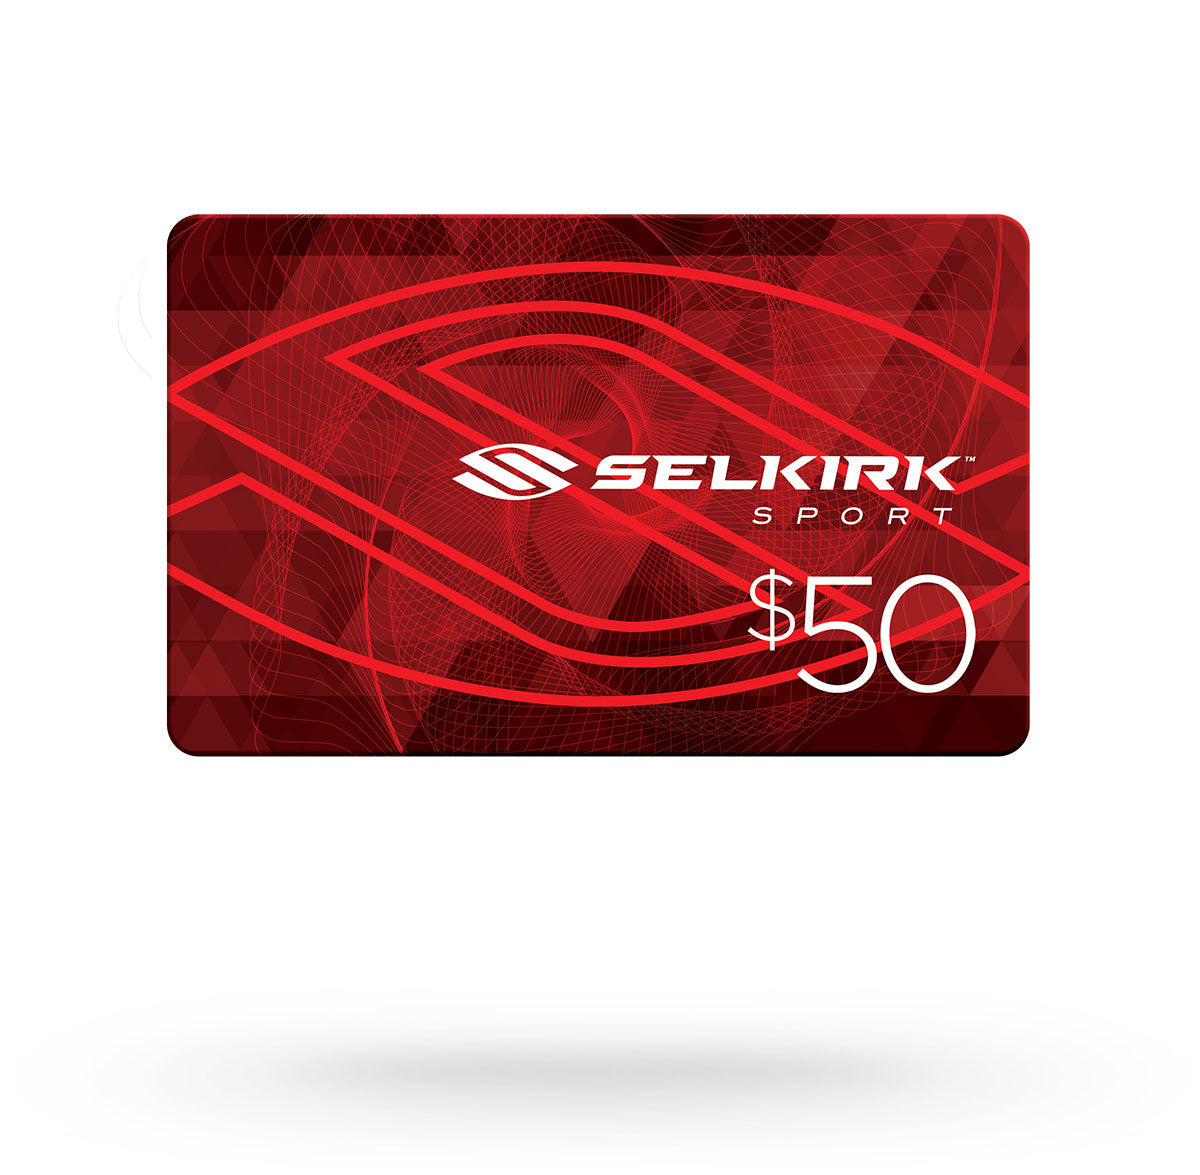 Selkirk Sport Pickleball Gift Card - $50